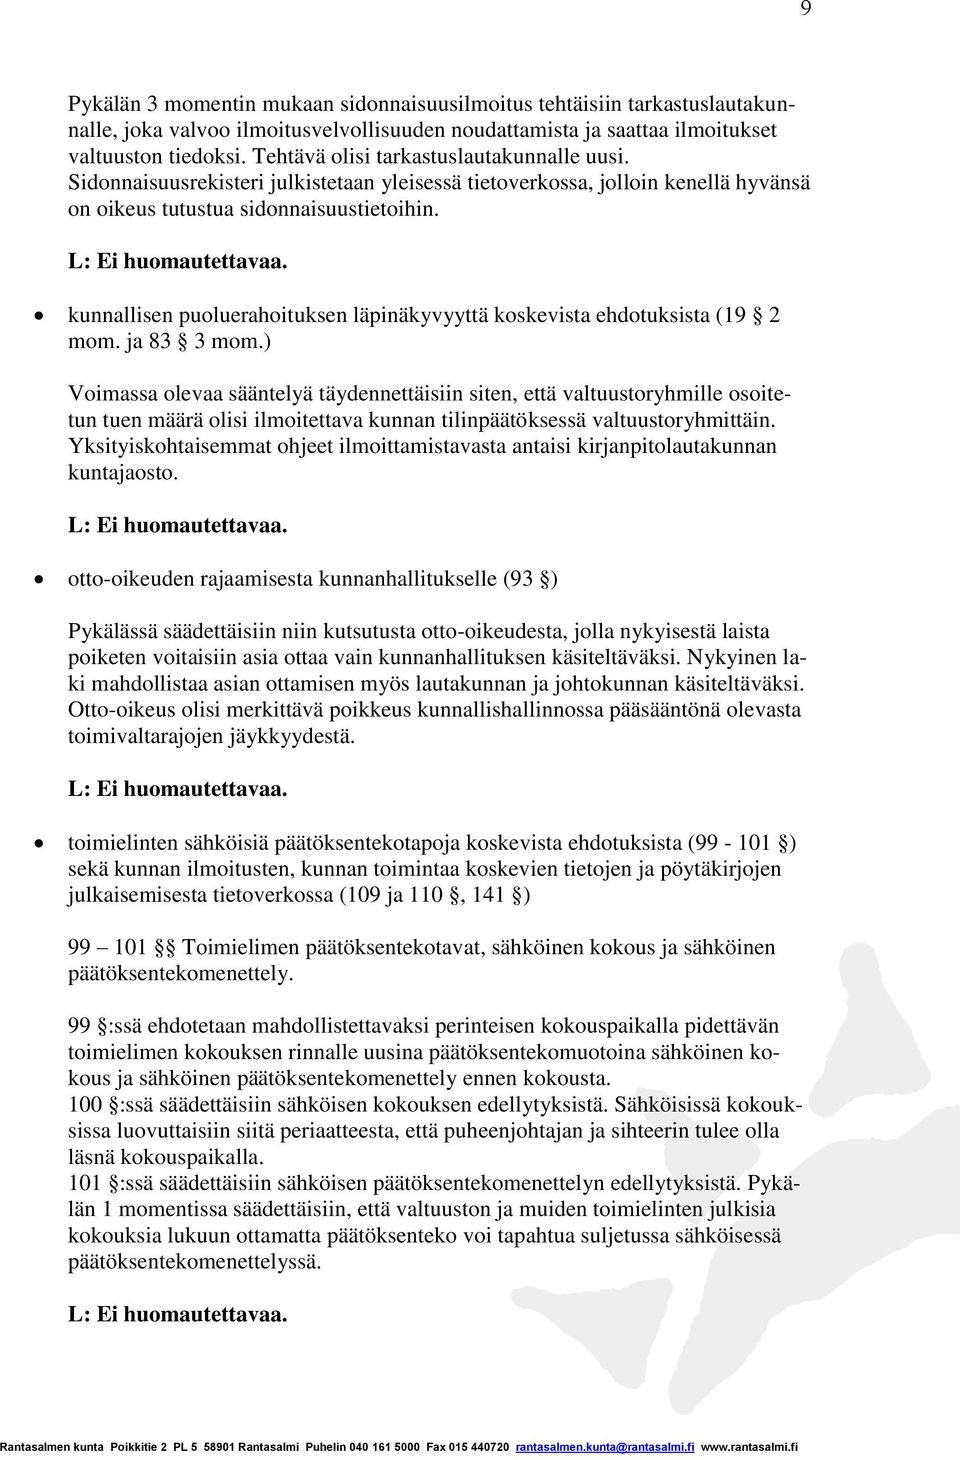 kunnallisen puoluerahoituksen läpinäkyvyyttä koskevista ehdotuksista (19 2 mom. ja 83 3 mom.